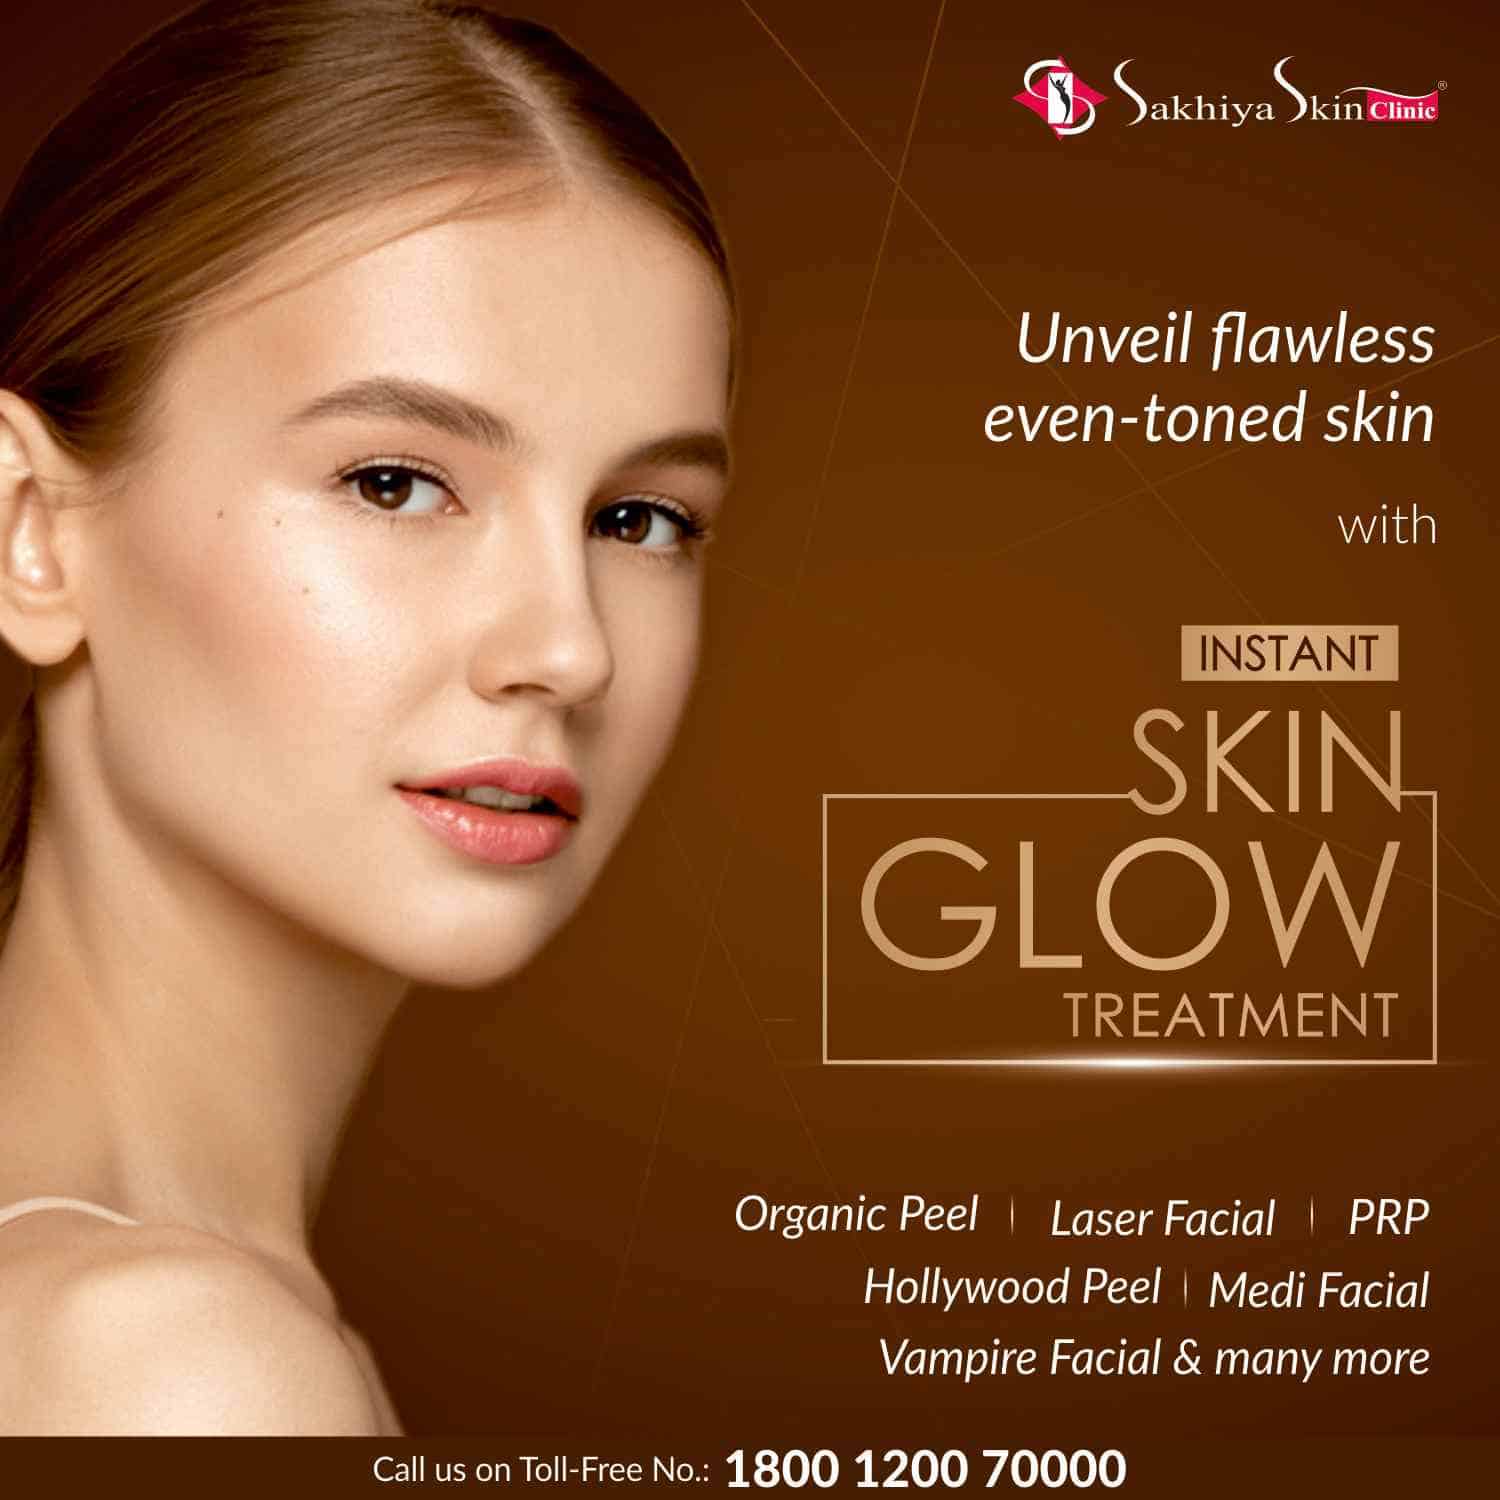 Skin Glow Social Media Ad - Sakhiya Skin Clinic